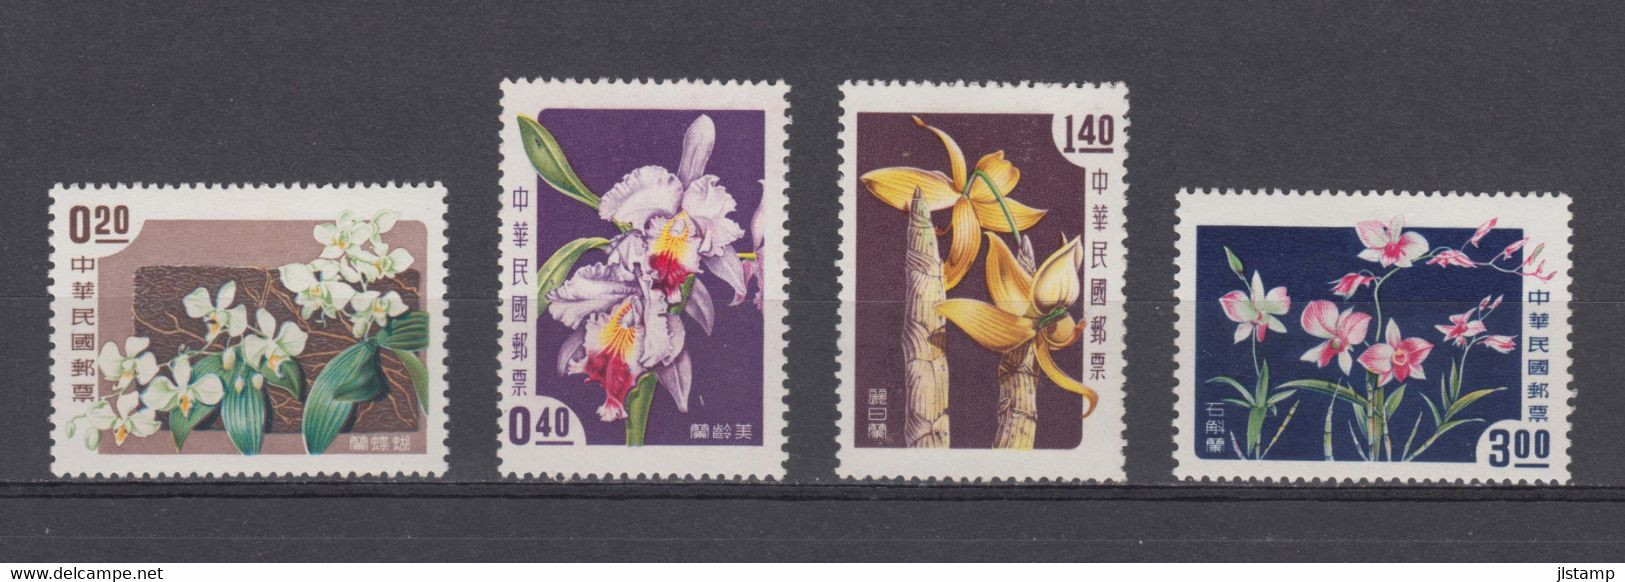 China Taiwan 1958 Orchids Flowes Stamp Set,Scott# 1189-1192, MH,OG,VF - Ongebruikt